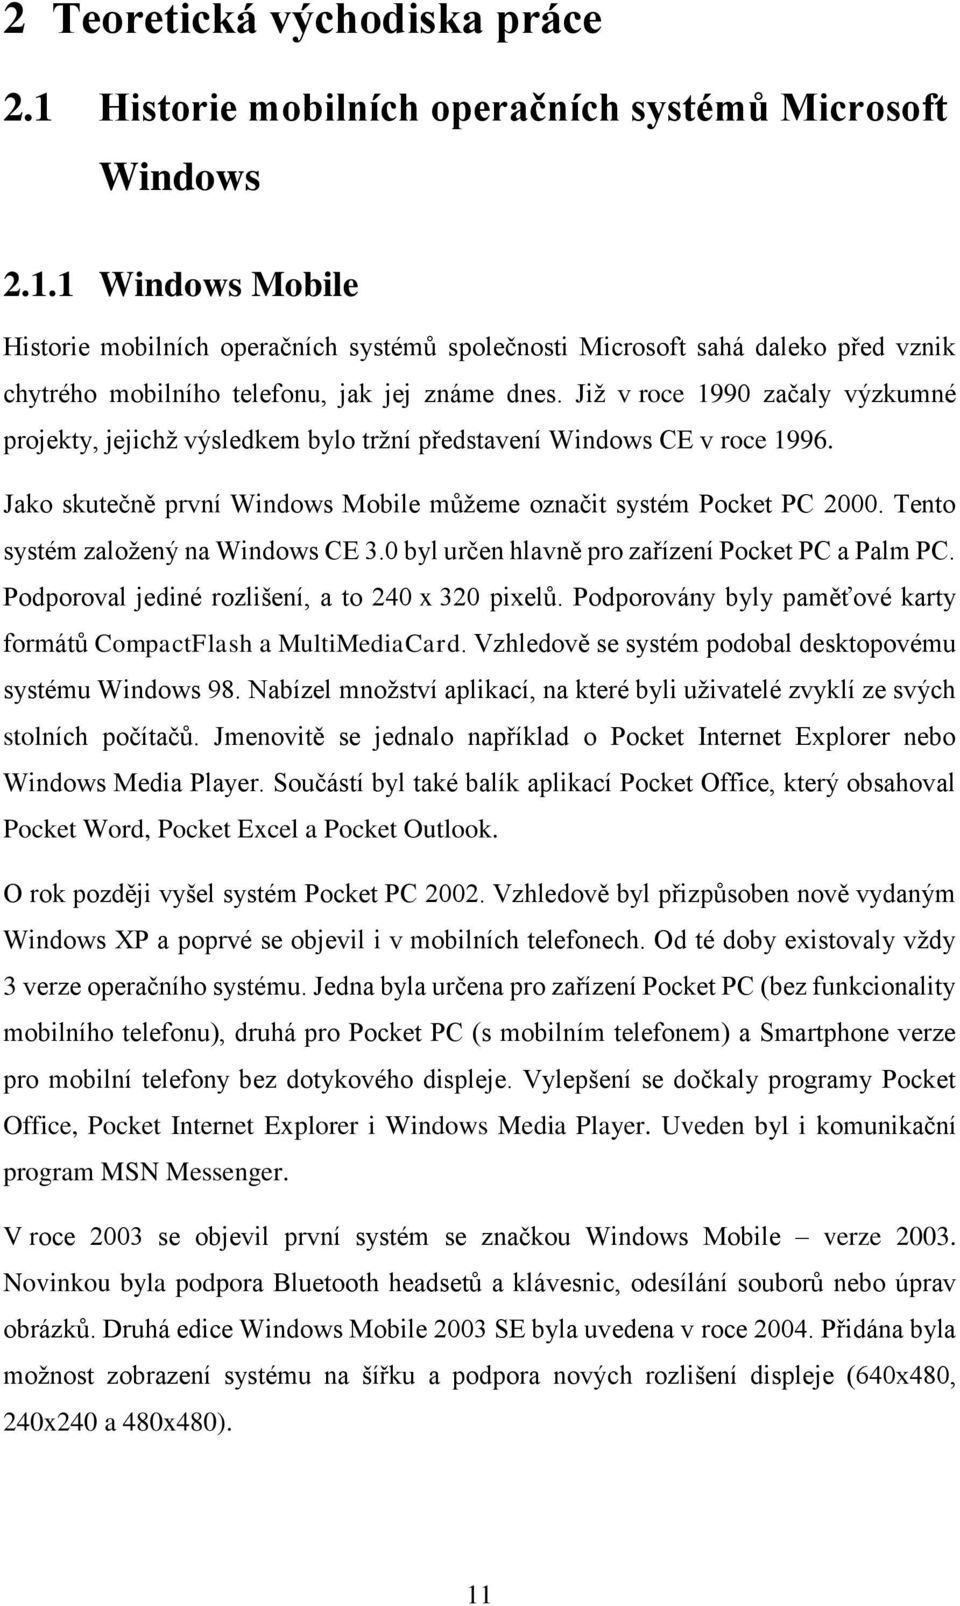 Tento systém založený na Windows CE 3.0 byl určen hlavně pro zařízení Pocket PC a Palm PC. Podporoval jediné rozlišení, a to 240 x 320 pixelů.